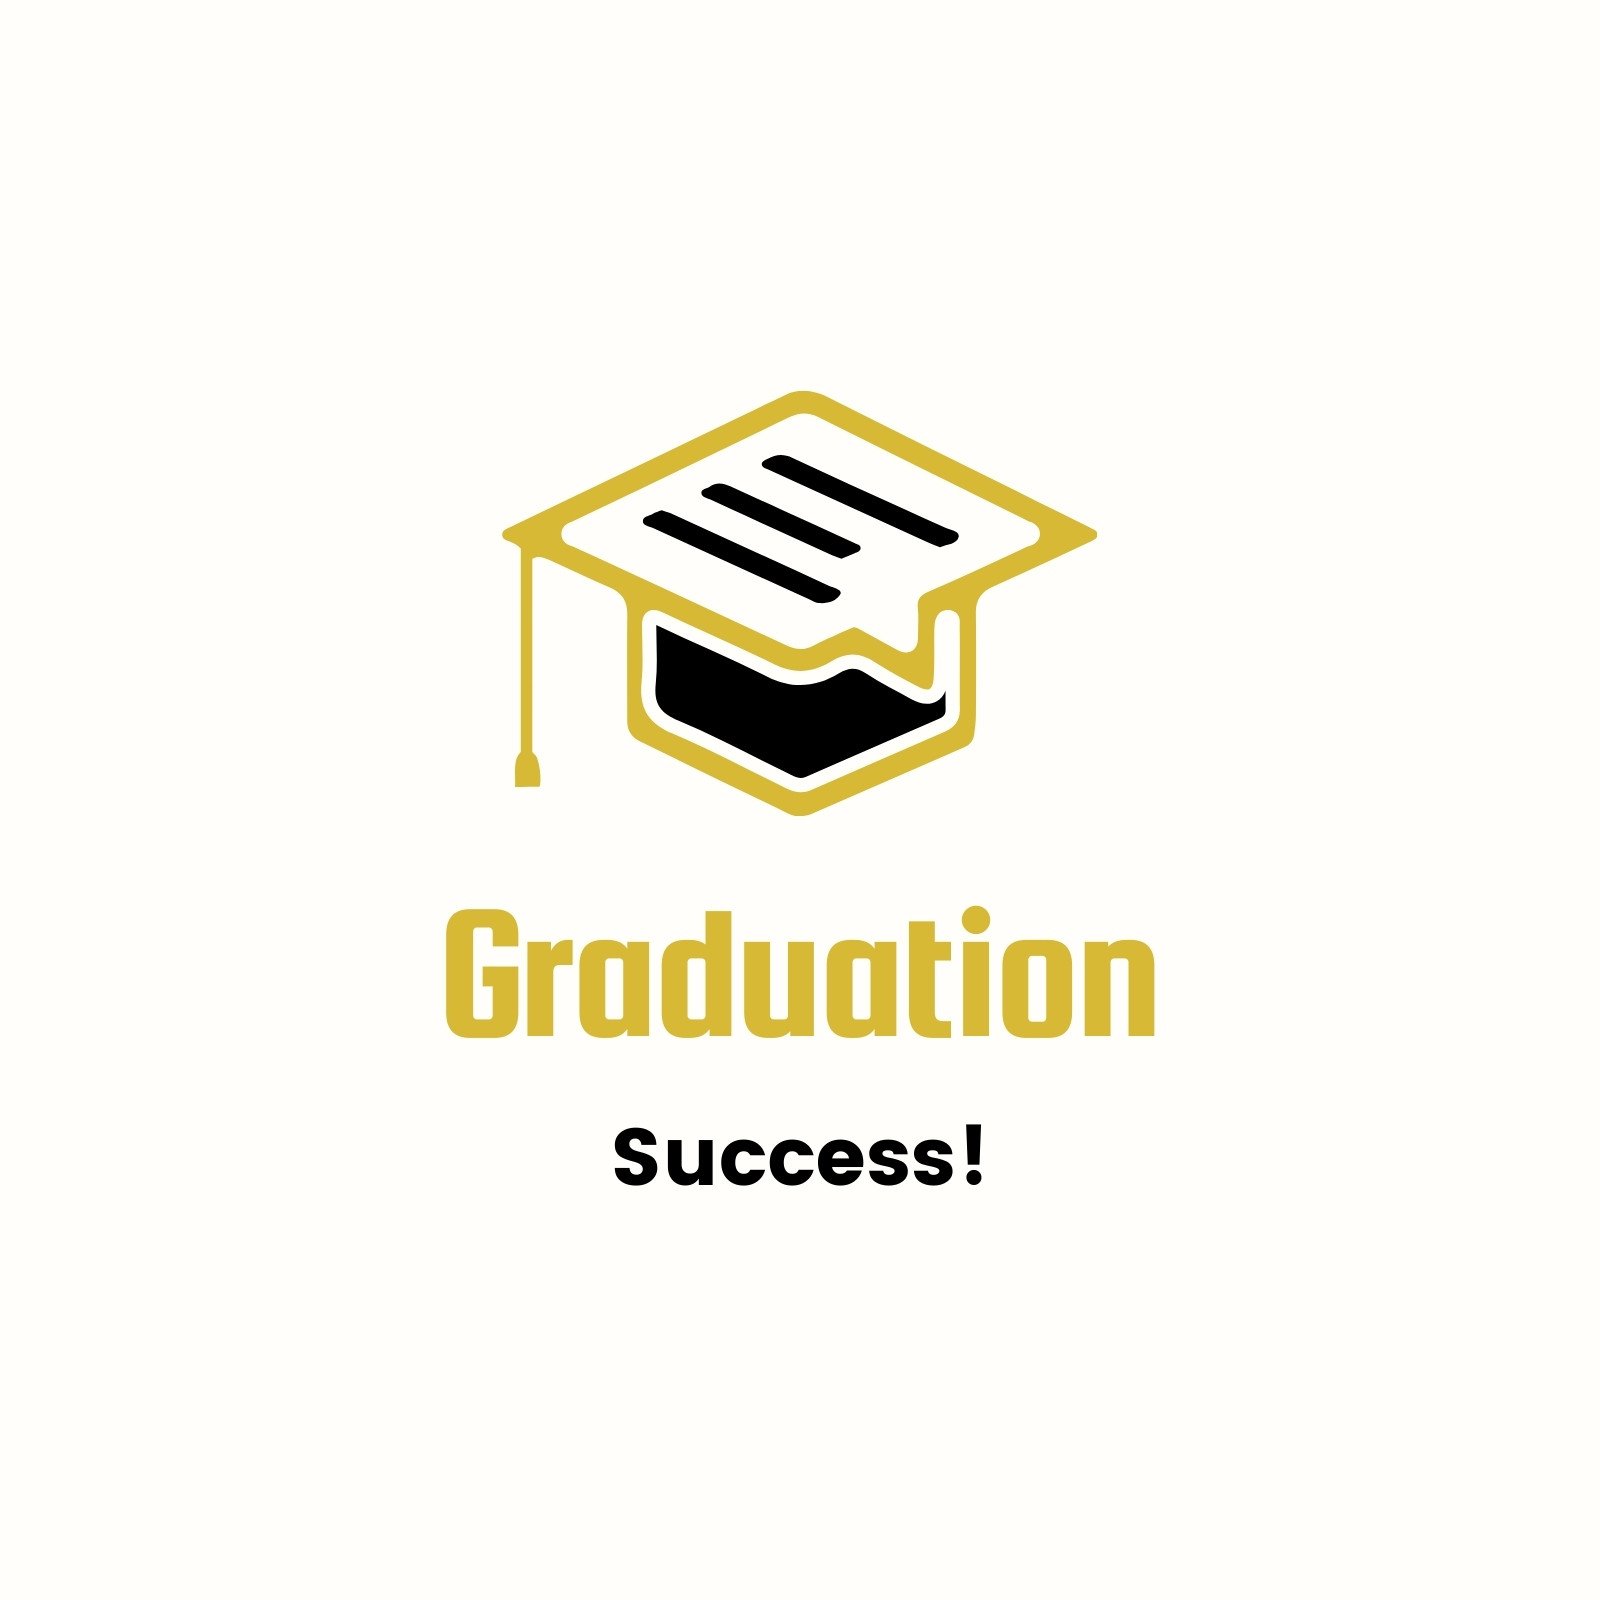 Graduation Cap Template, Graduation Hat Template, Graduate Cap Template,  Blank Graduation Cap, Graduation Cap Sublimation, Canva SVG, PNG 